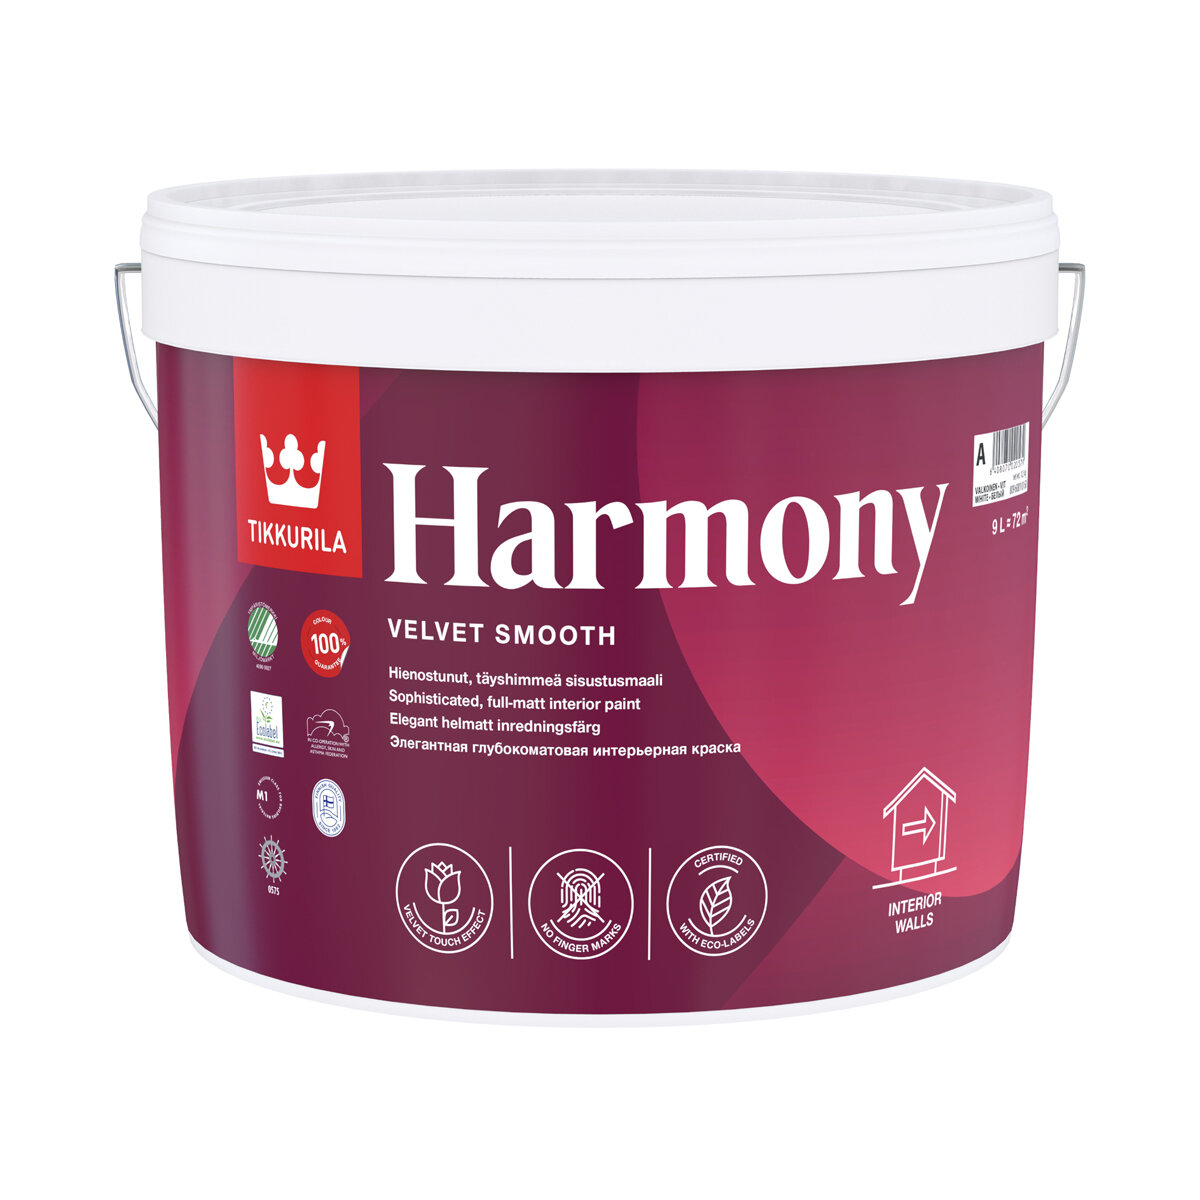    Harmony () TIKKURILA 9  ( )